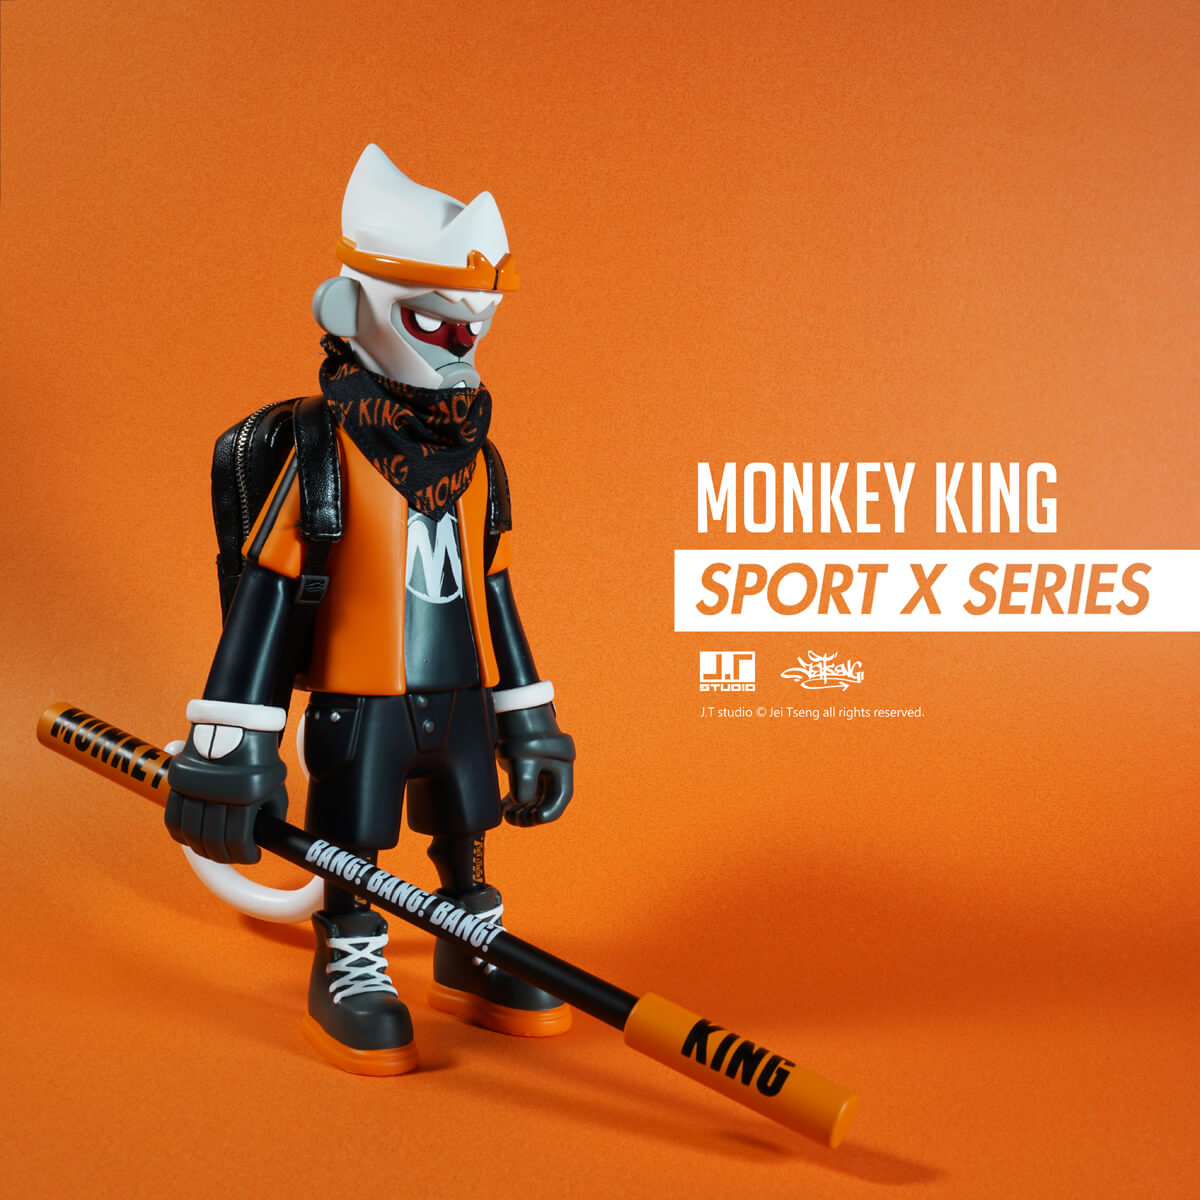 monkey king sport x vinyl series by jt studio worldwide release